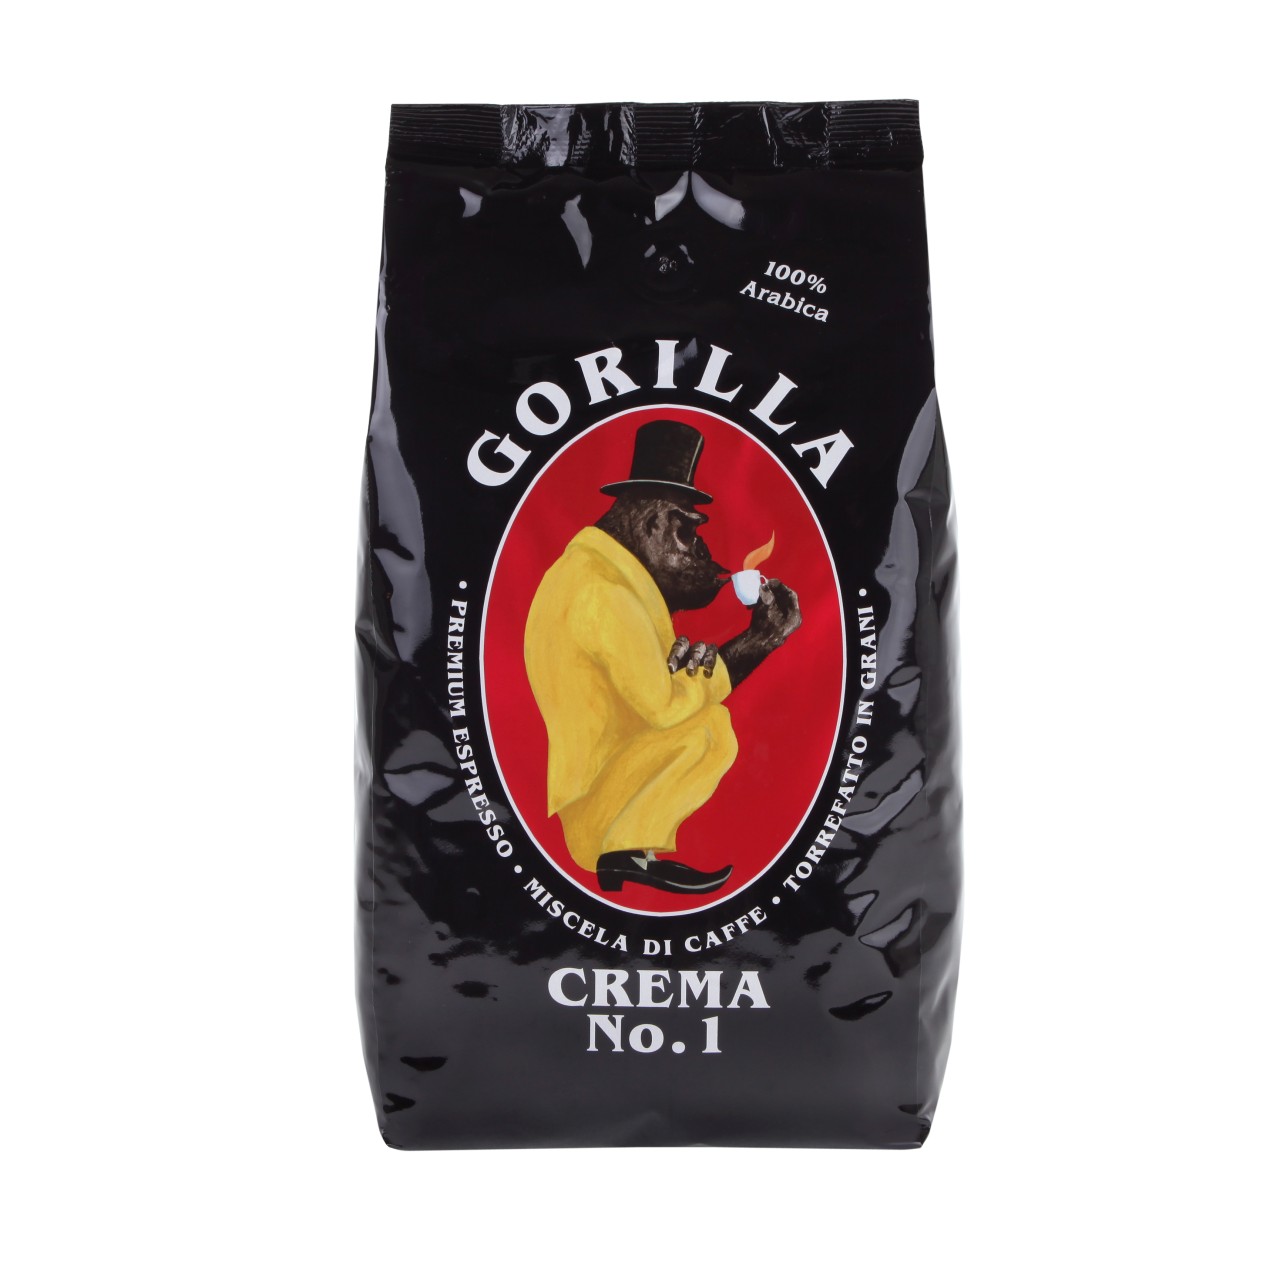 Gorilla Crema No. 1